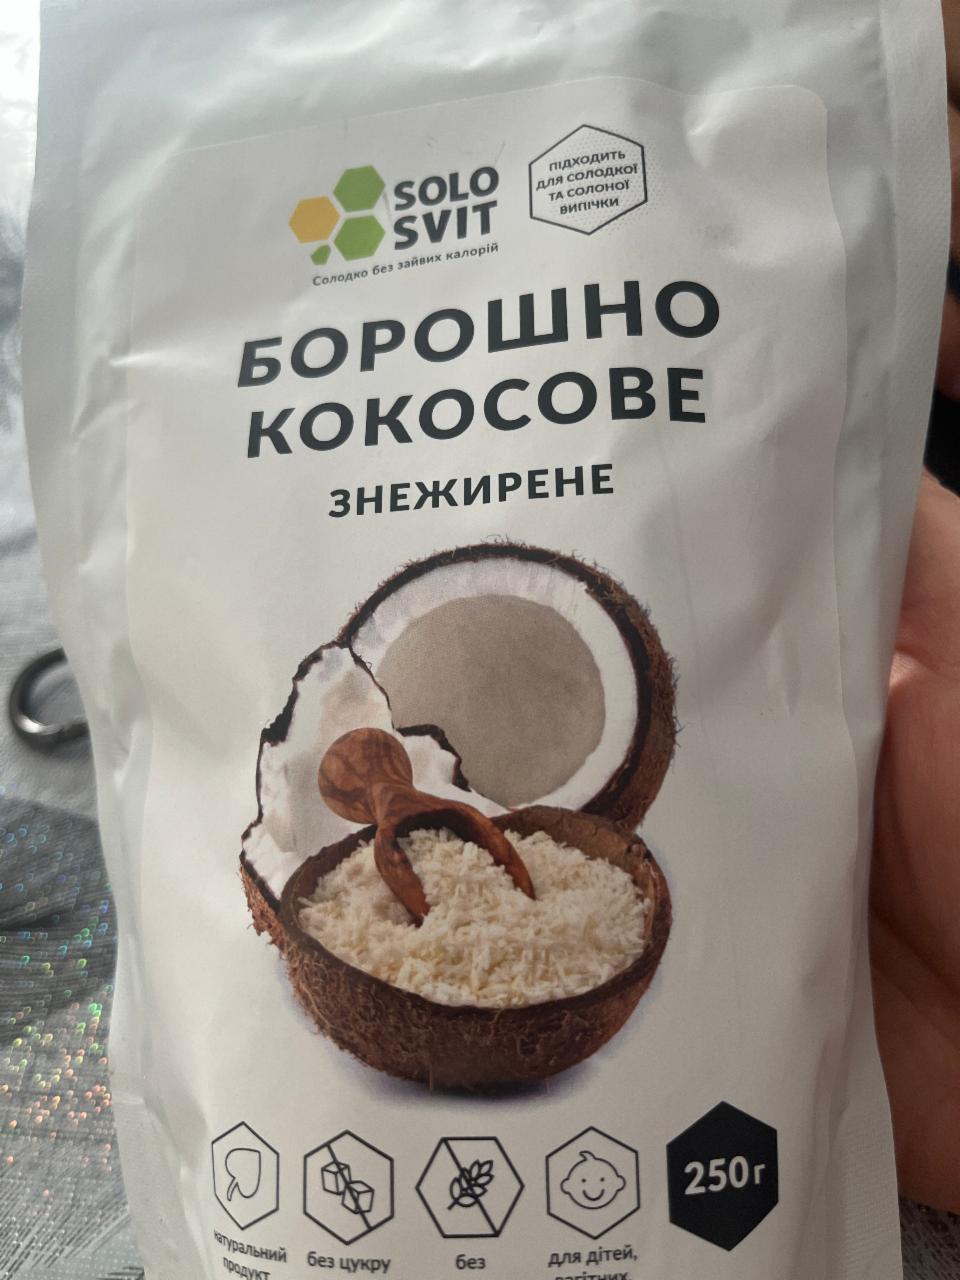 Фото - мука кокосовая обезжиренная SOLOSVIT